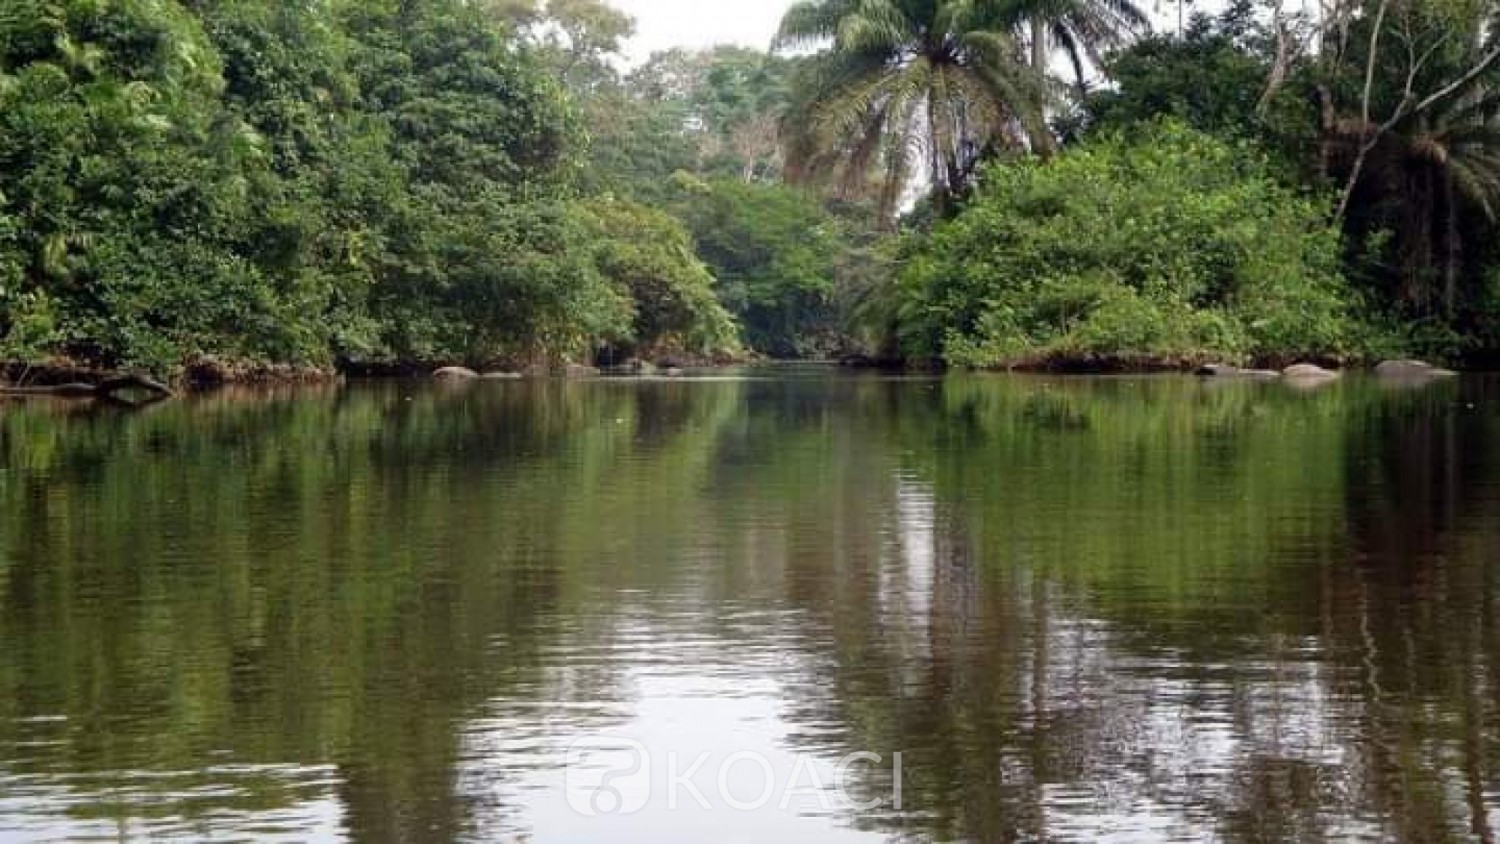 Côte d'Ivoire : Duekoué, au cours d'une traversée une pirogue chavire, 07 fillettes perdent la vie dans le fleuve Sassandra